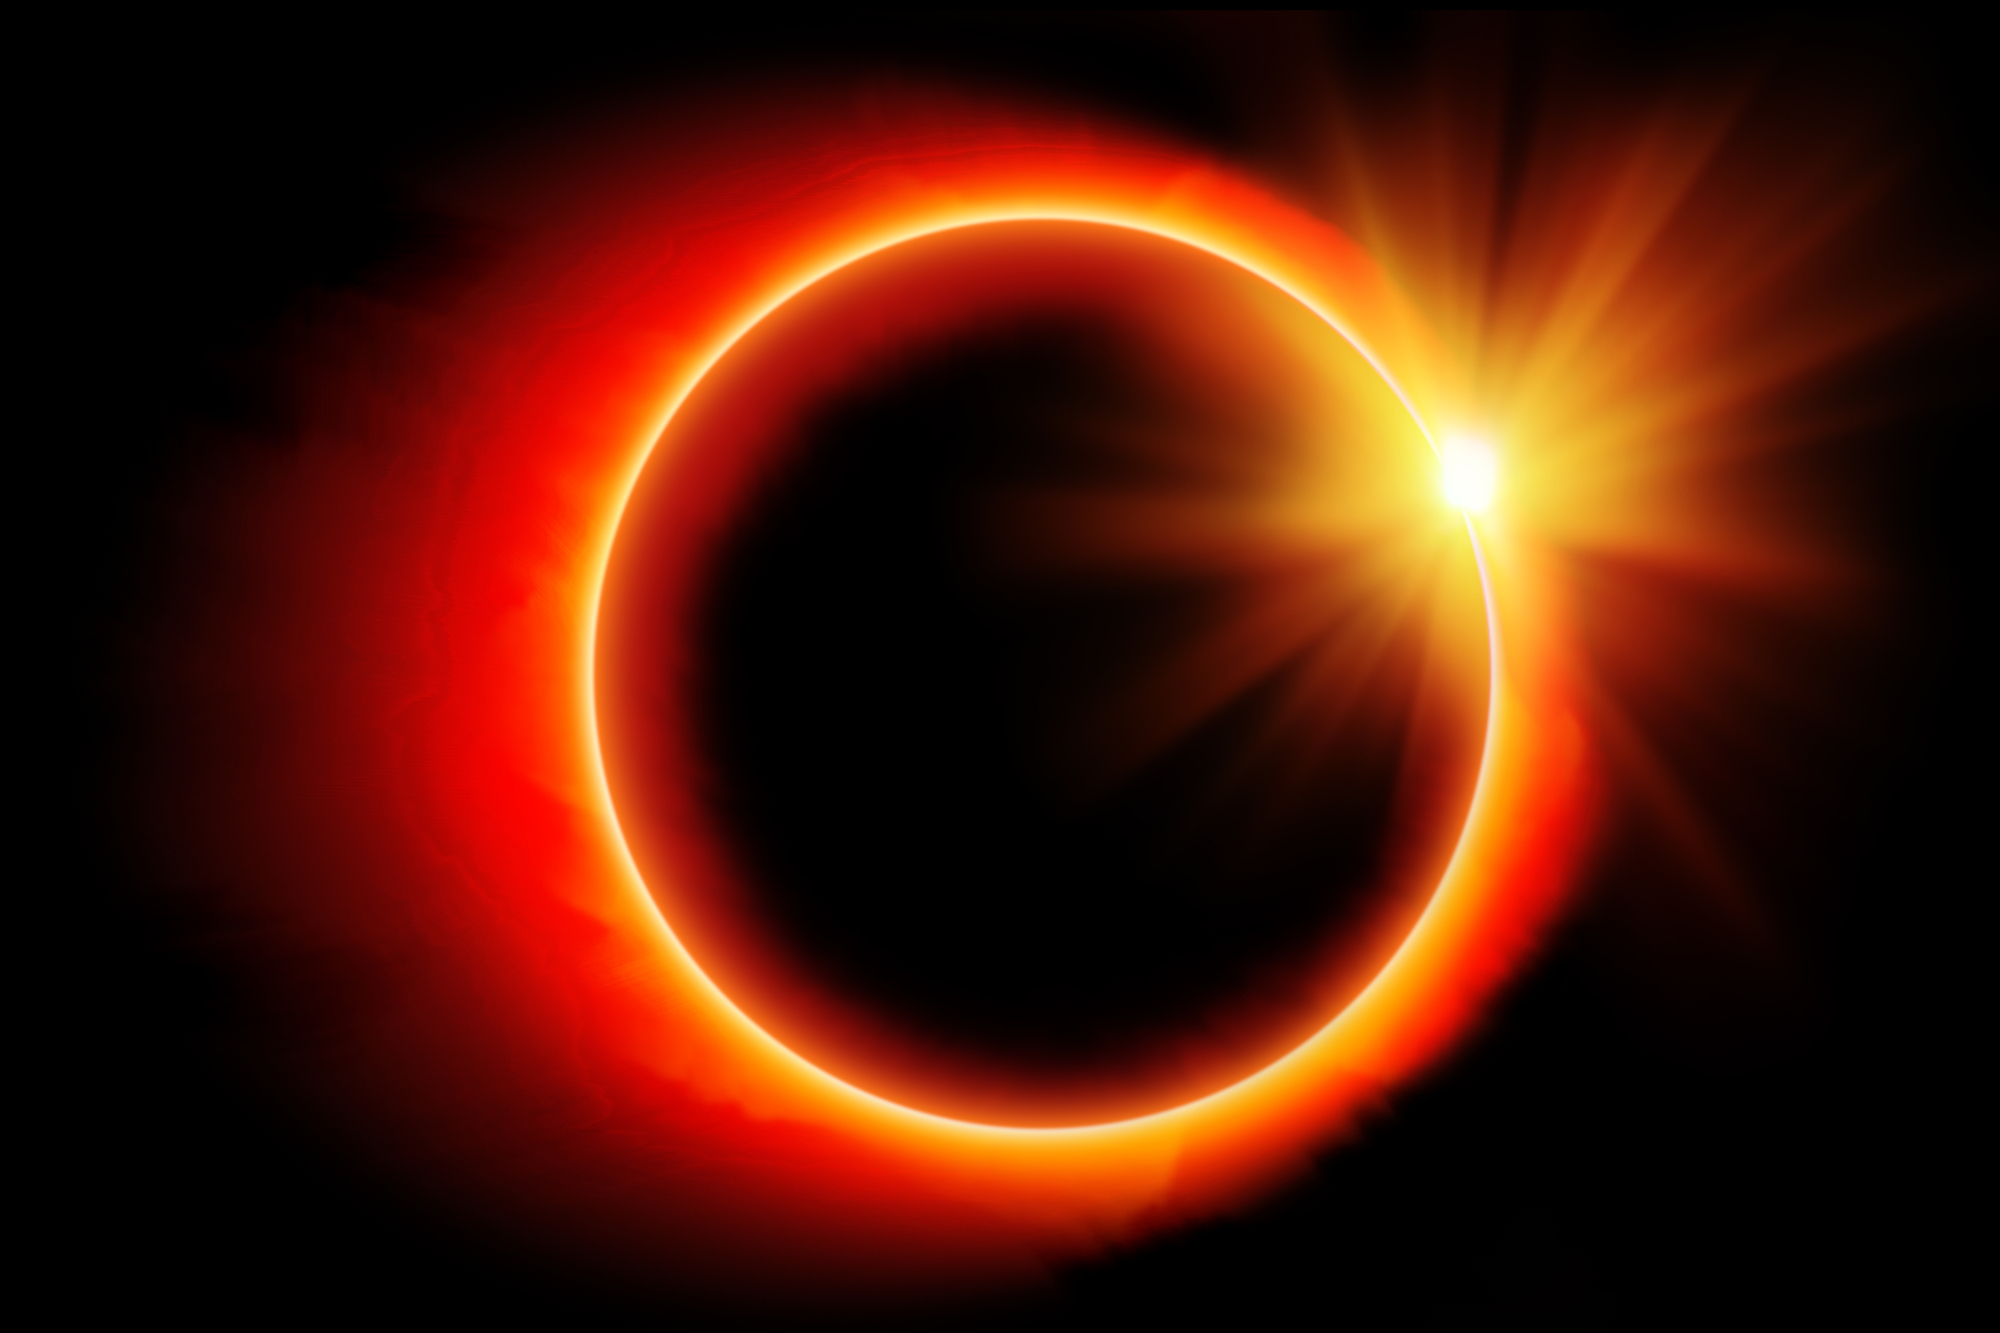 México tendrá dos eclipses solares en 2023 y 2024. ¿Dónde verlos